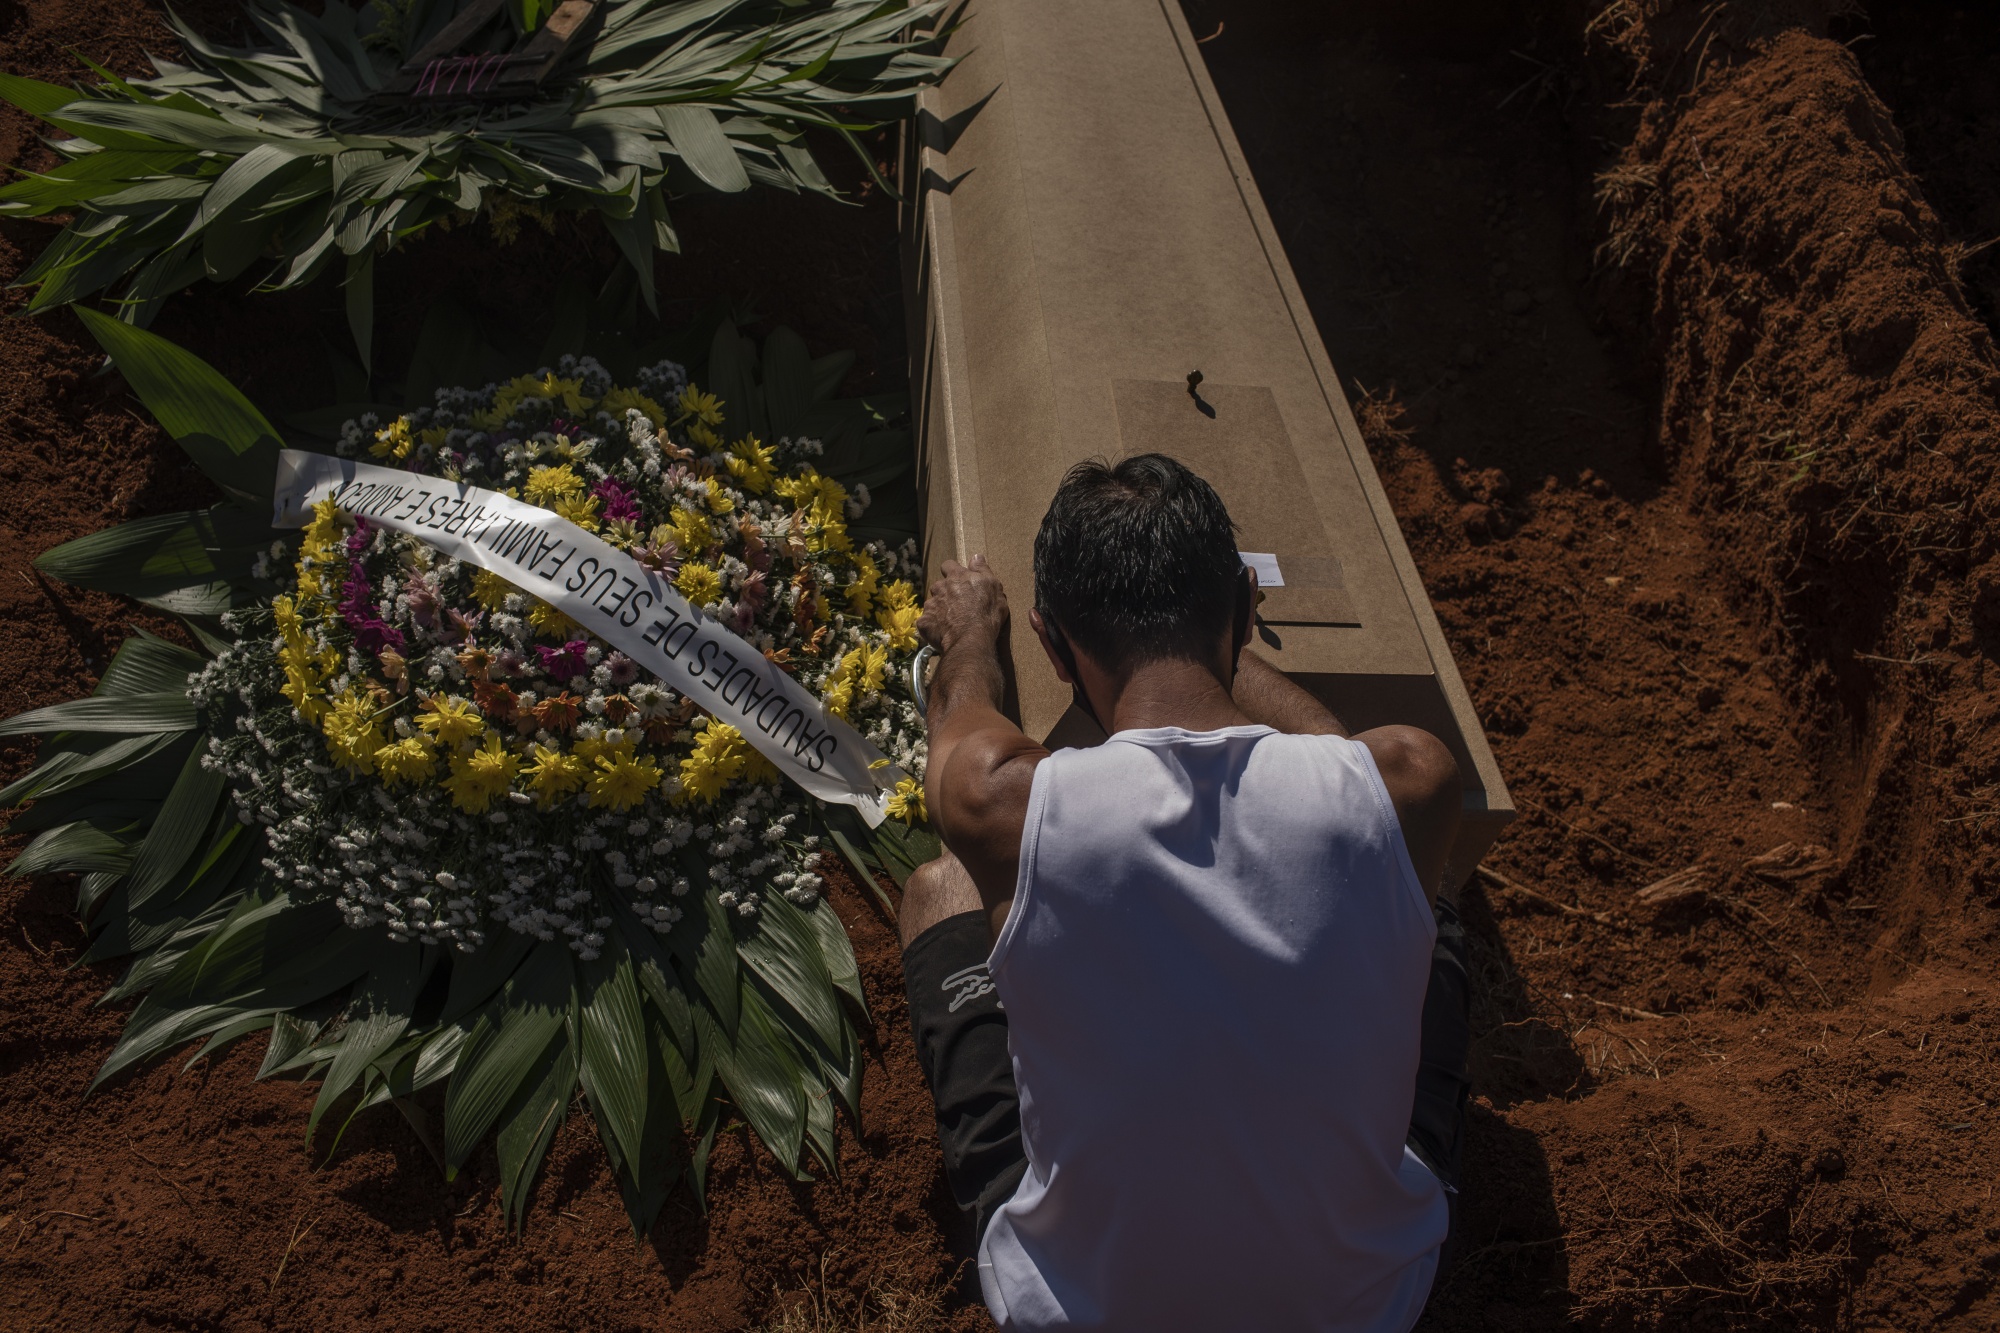 Um enlutado está sentado ao lado do caixão de uma vítima de Covid-19 no Cemitério Vila Formosa em São Paulo, Brasil, em 24 de março.